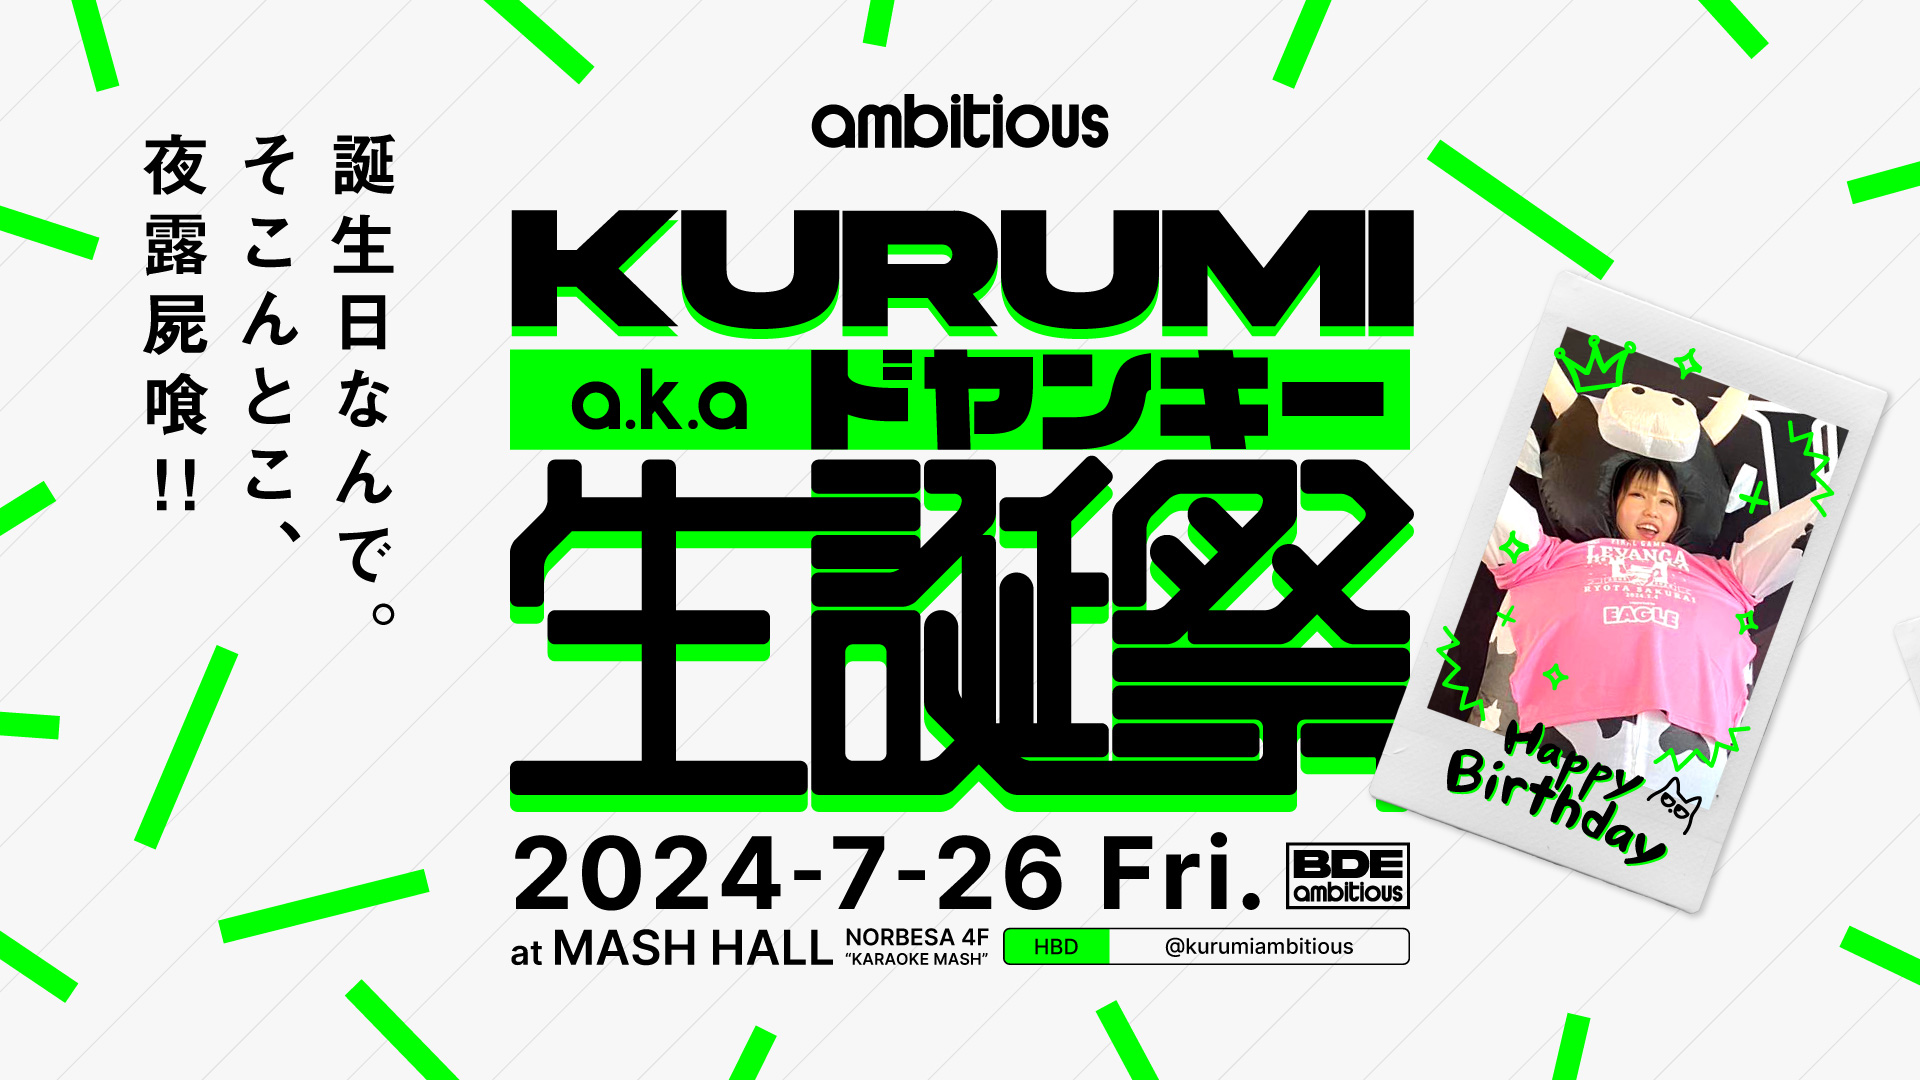 7/26、ambitious｢KURUMI｣のバースデーイベントをノルベサ4F MASH HALLにて開催します！